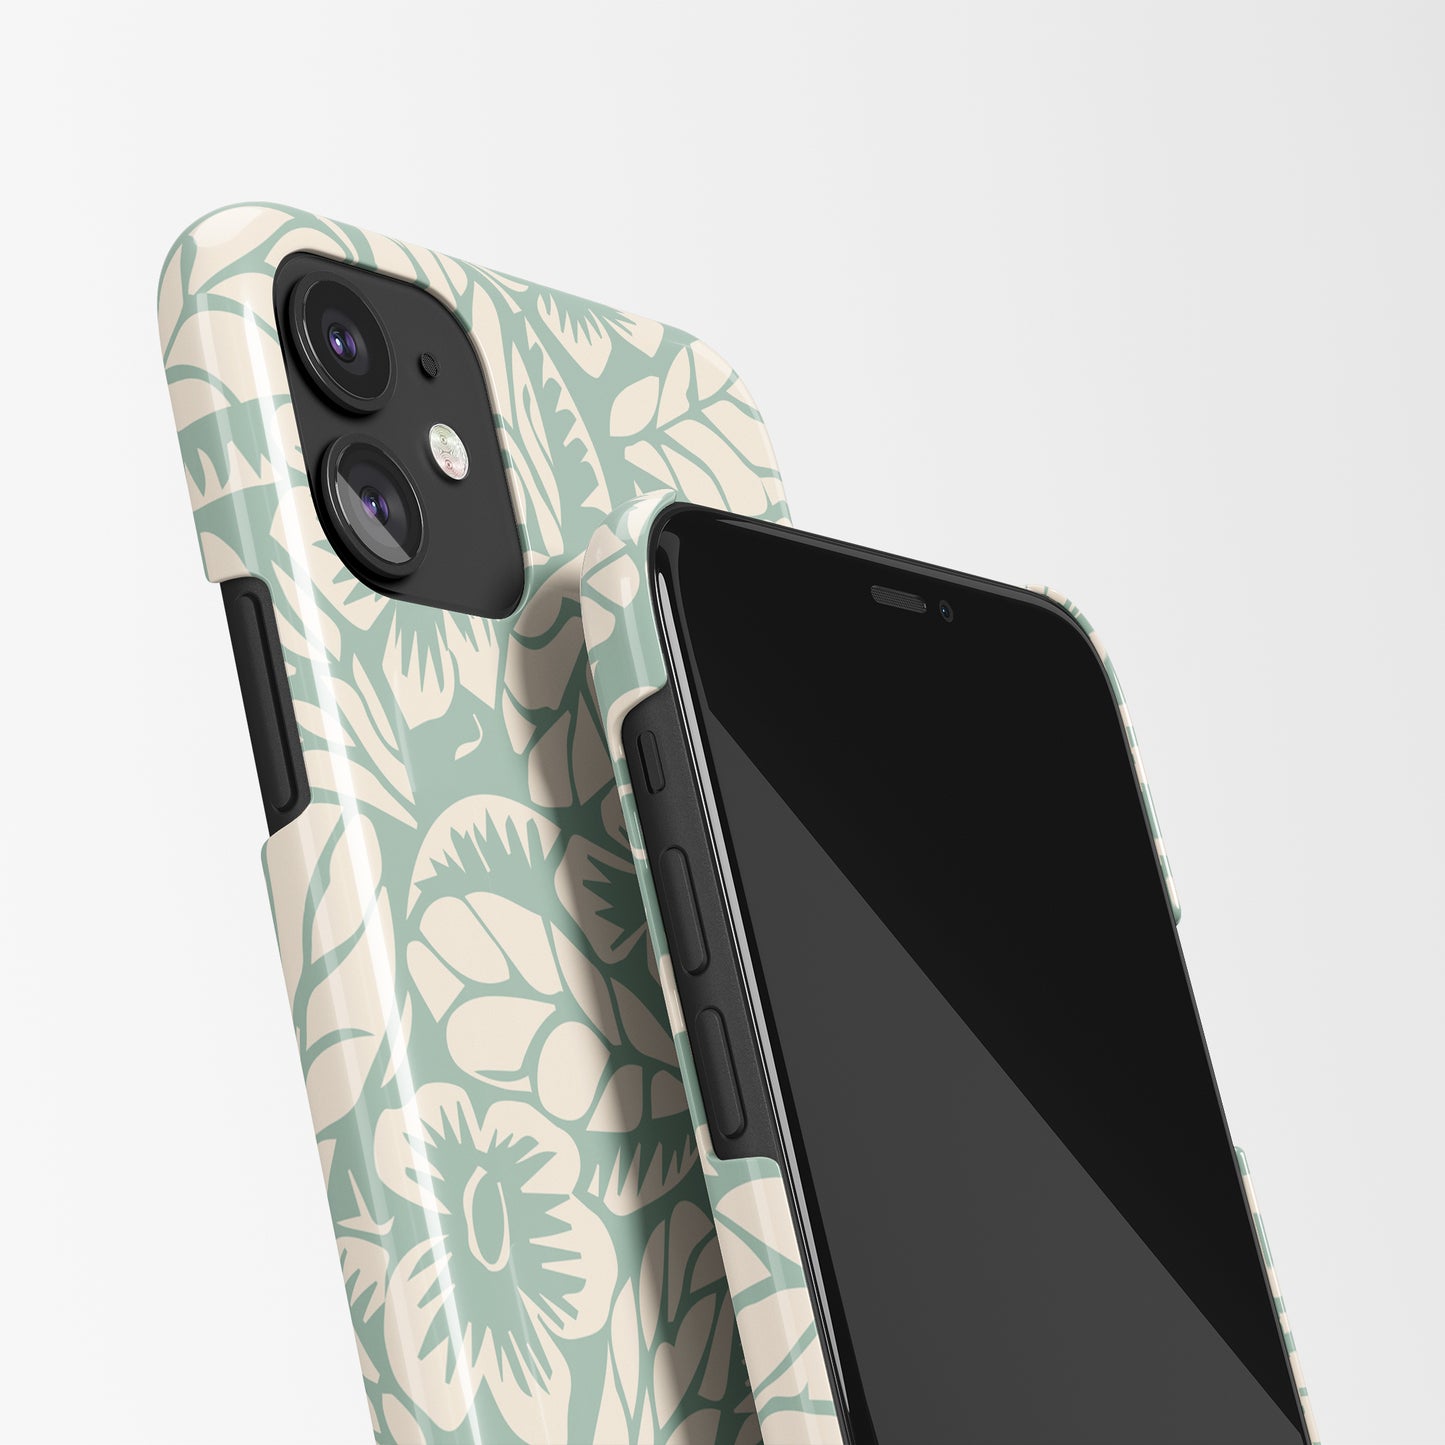 Pastel Floral iPhone Case